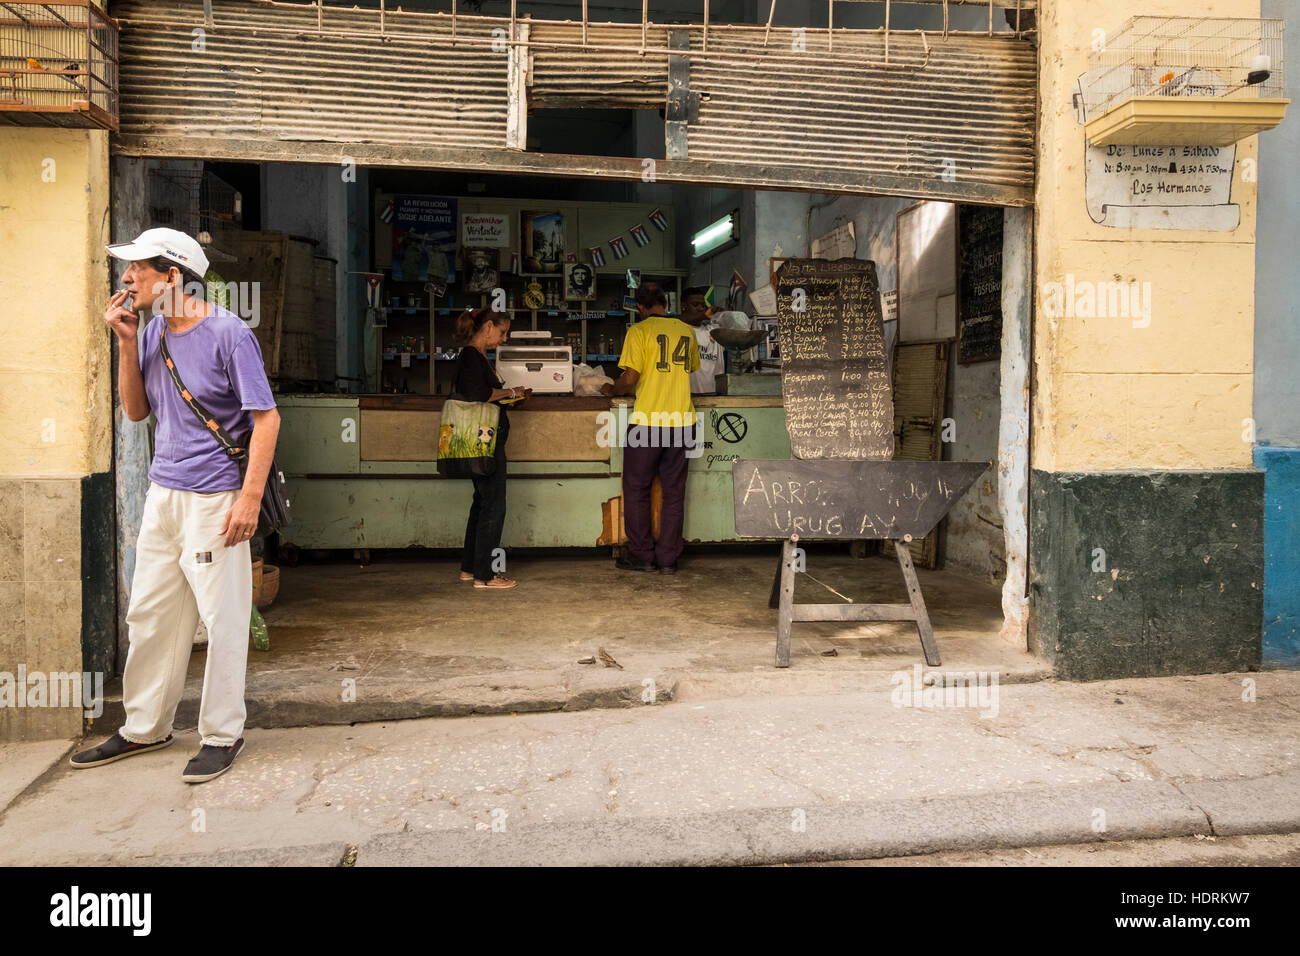 Ration shop on Brasil street in La Havana, Cuba. Stock Photo